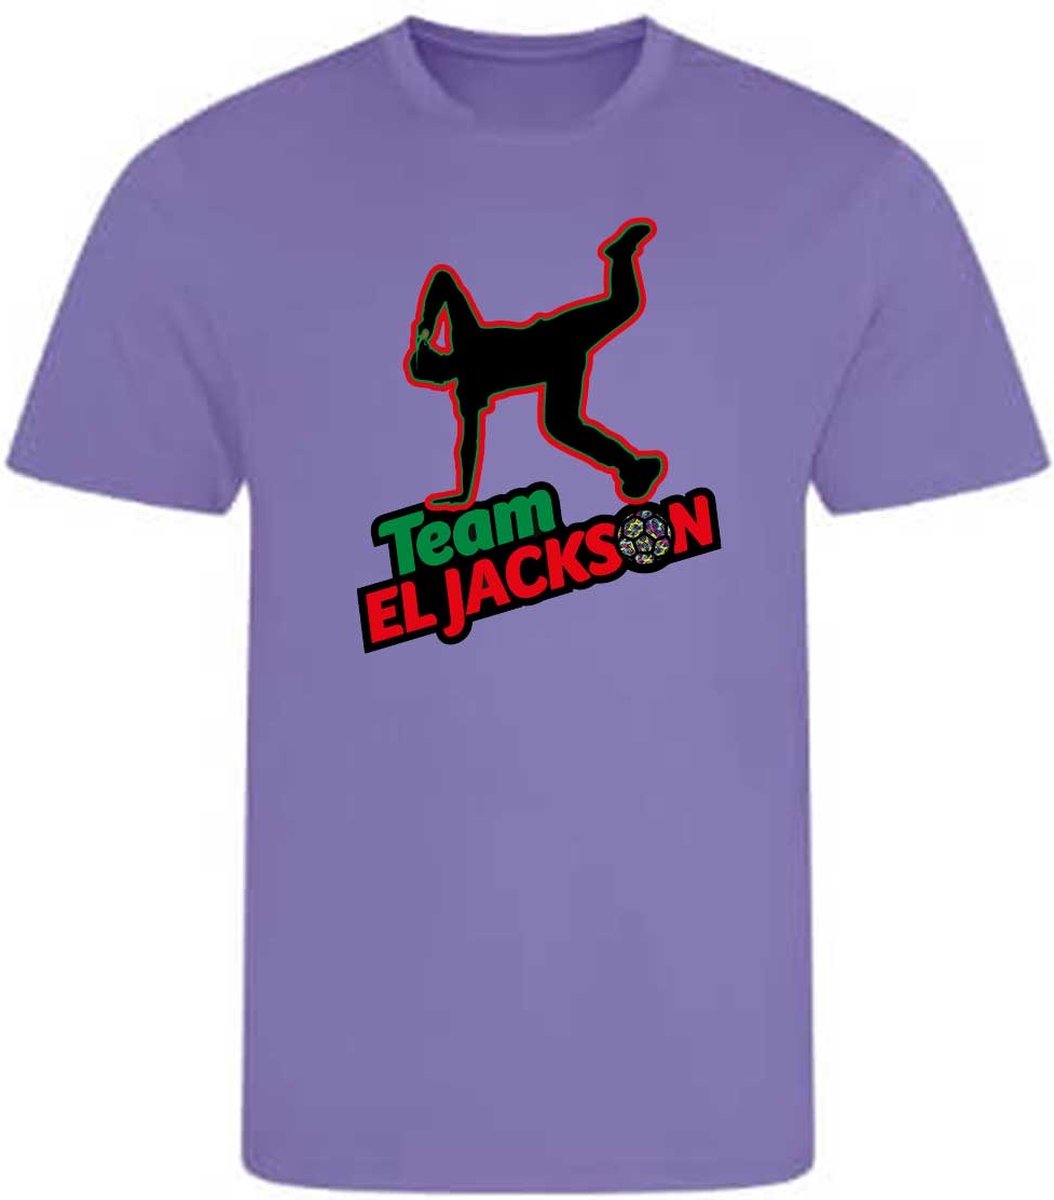 El Jackson T-Shirt - AMETHIST LILA (164-XXL) - VOETBALSHIRT -SPORTSHIRT